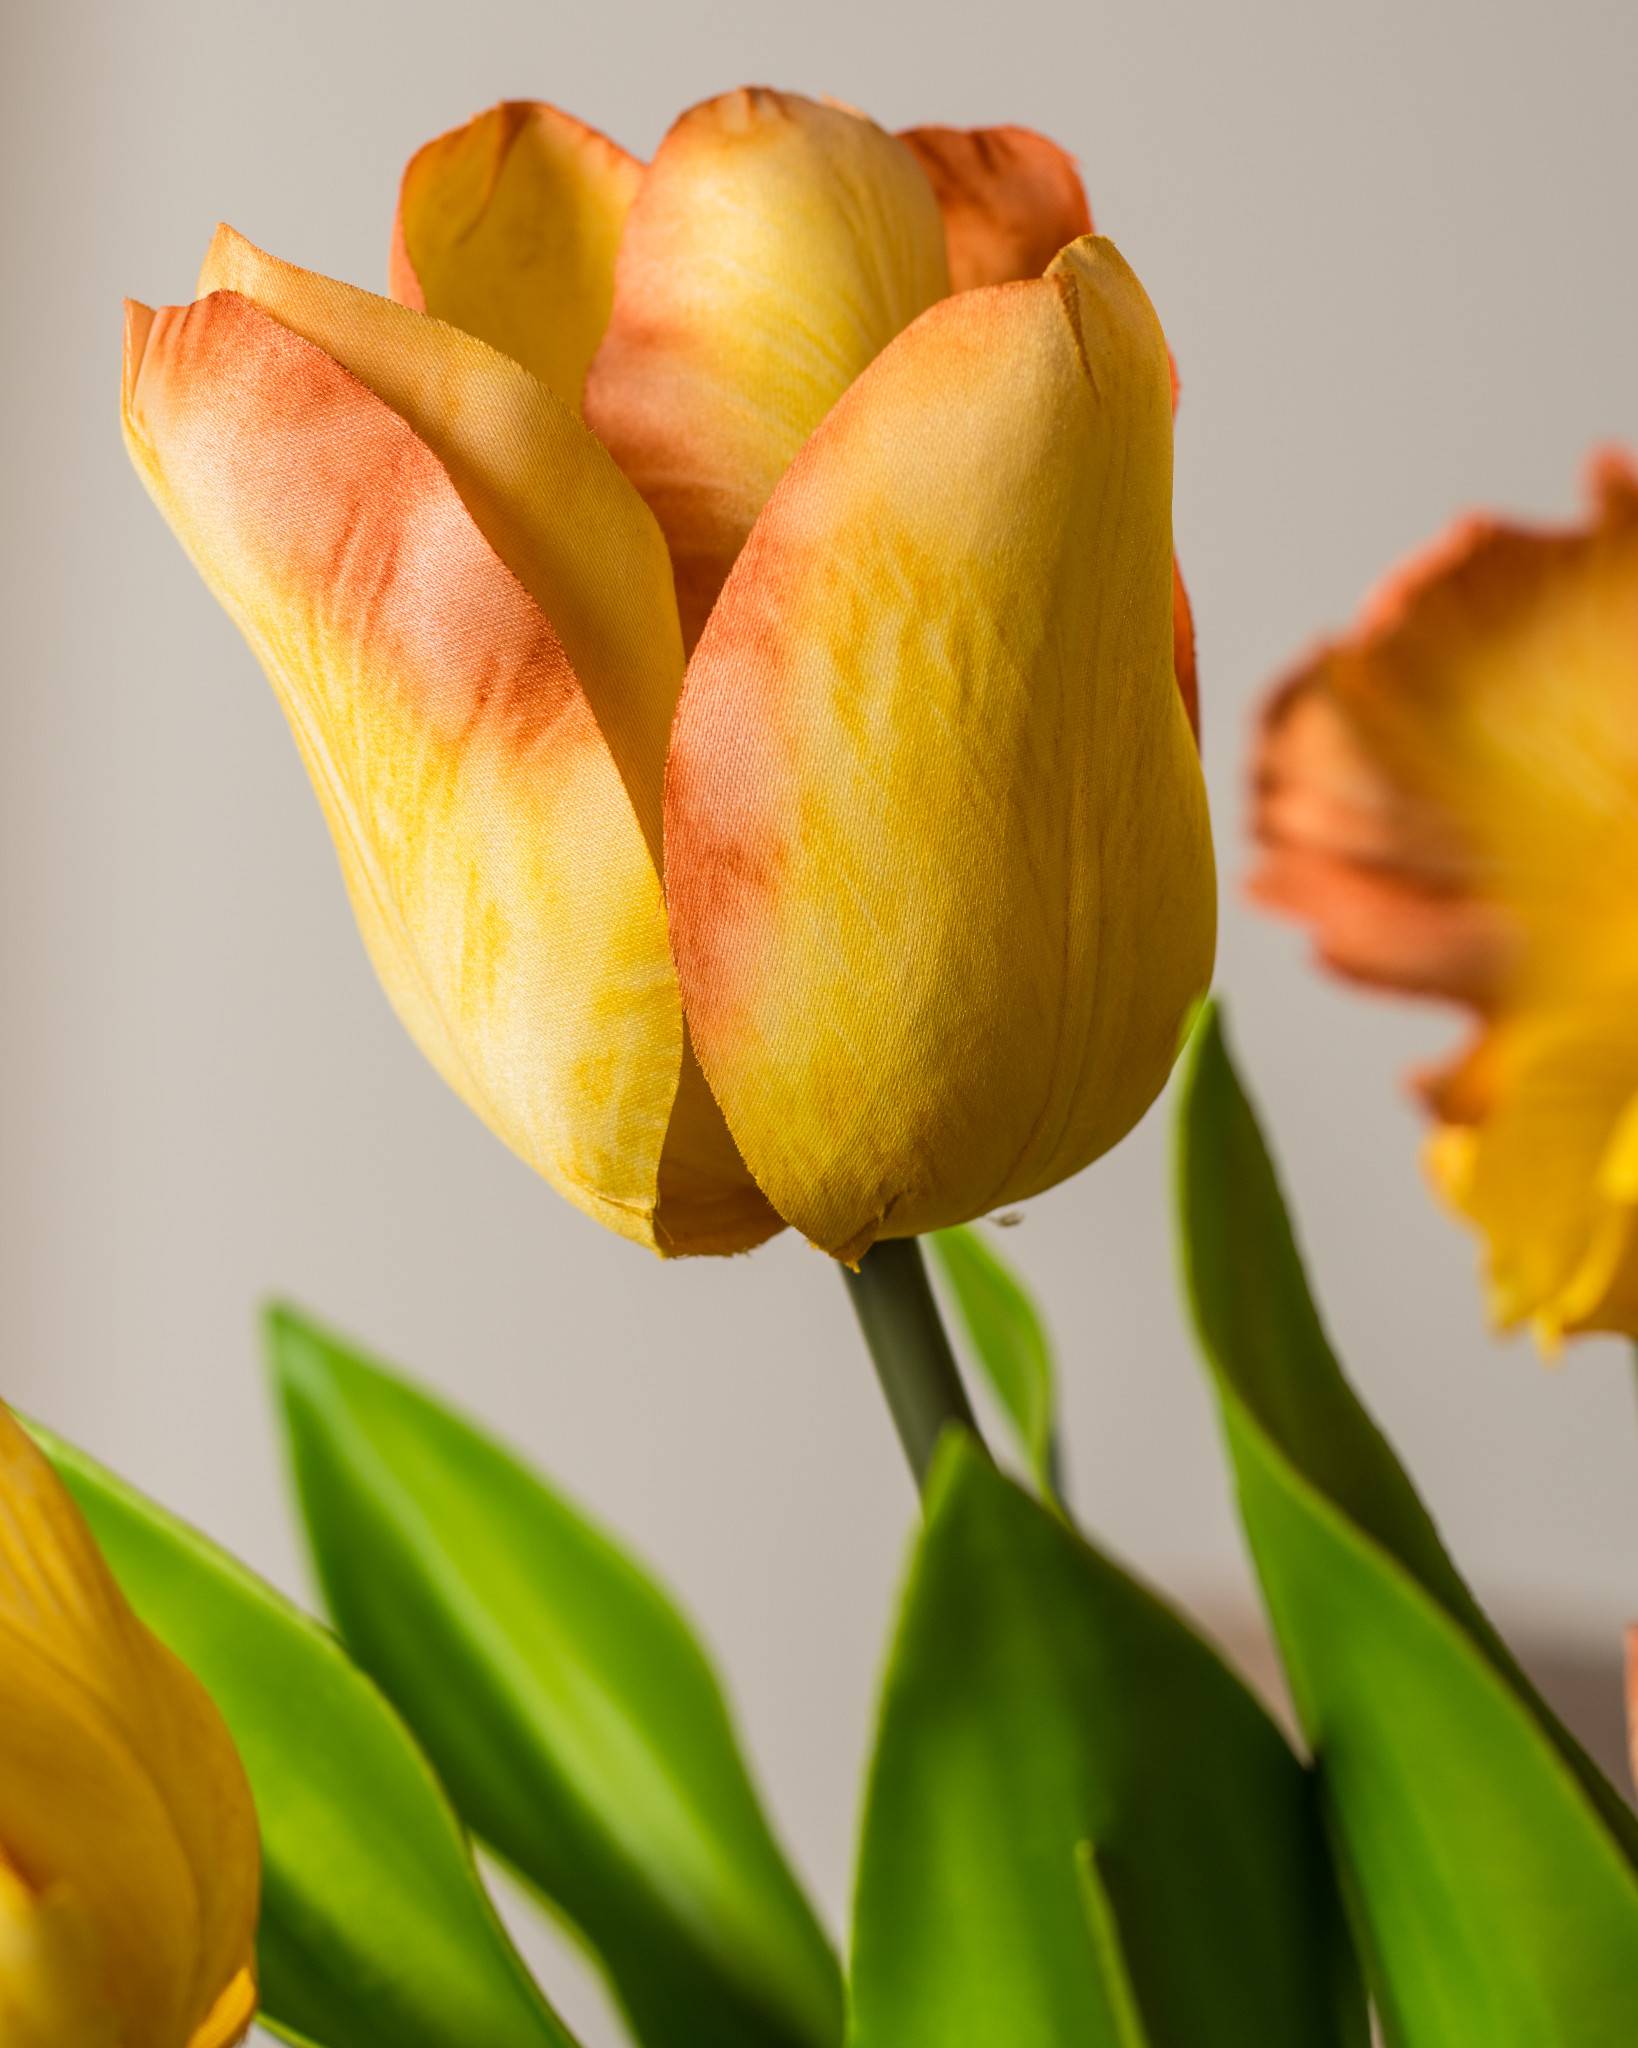 Dutch Tulip Flower Arrangement | Balsam Hill